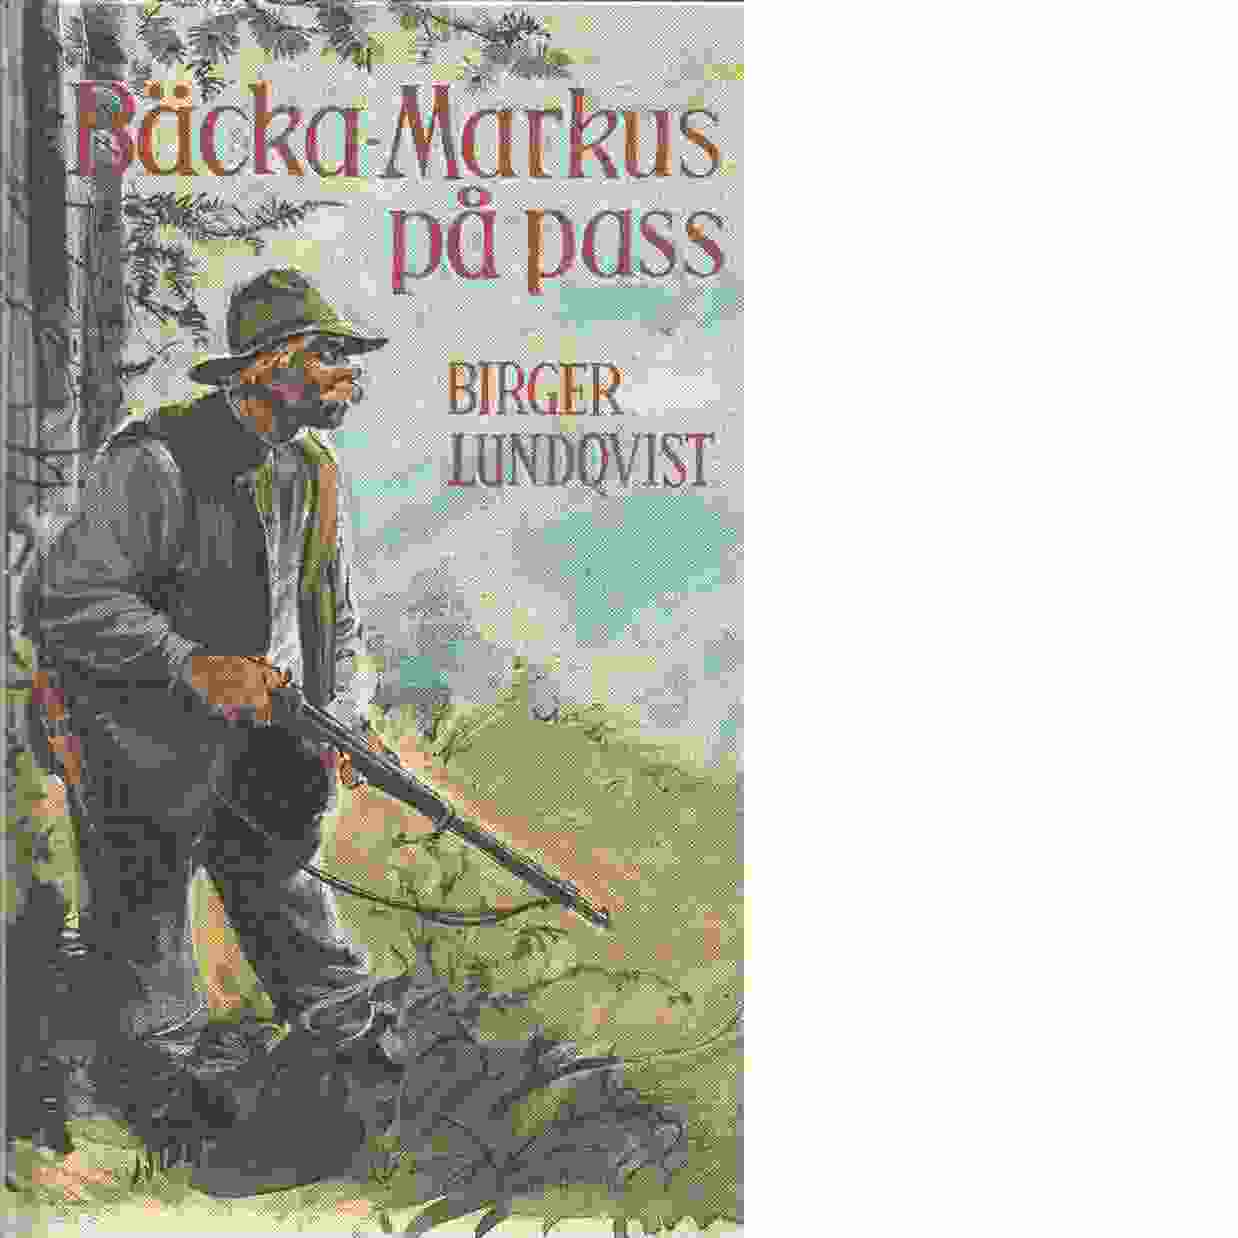 Bäcka-Markus på pass - Lundqvist, Birger